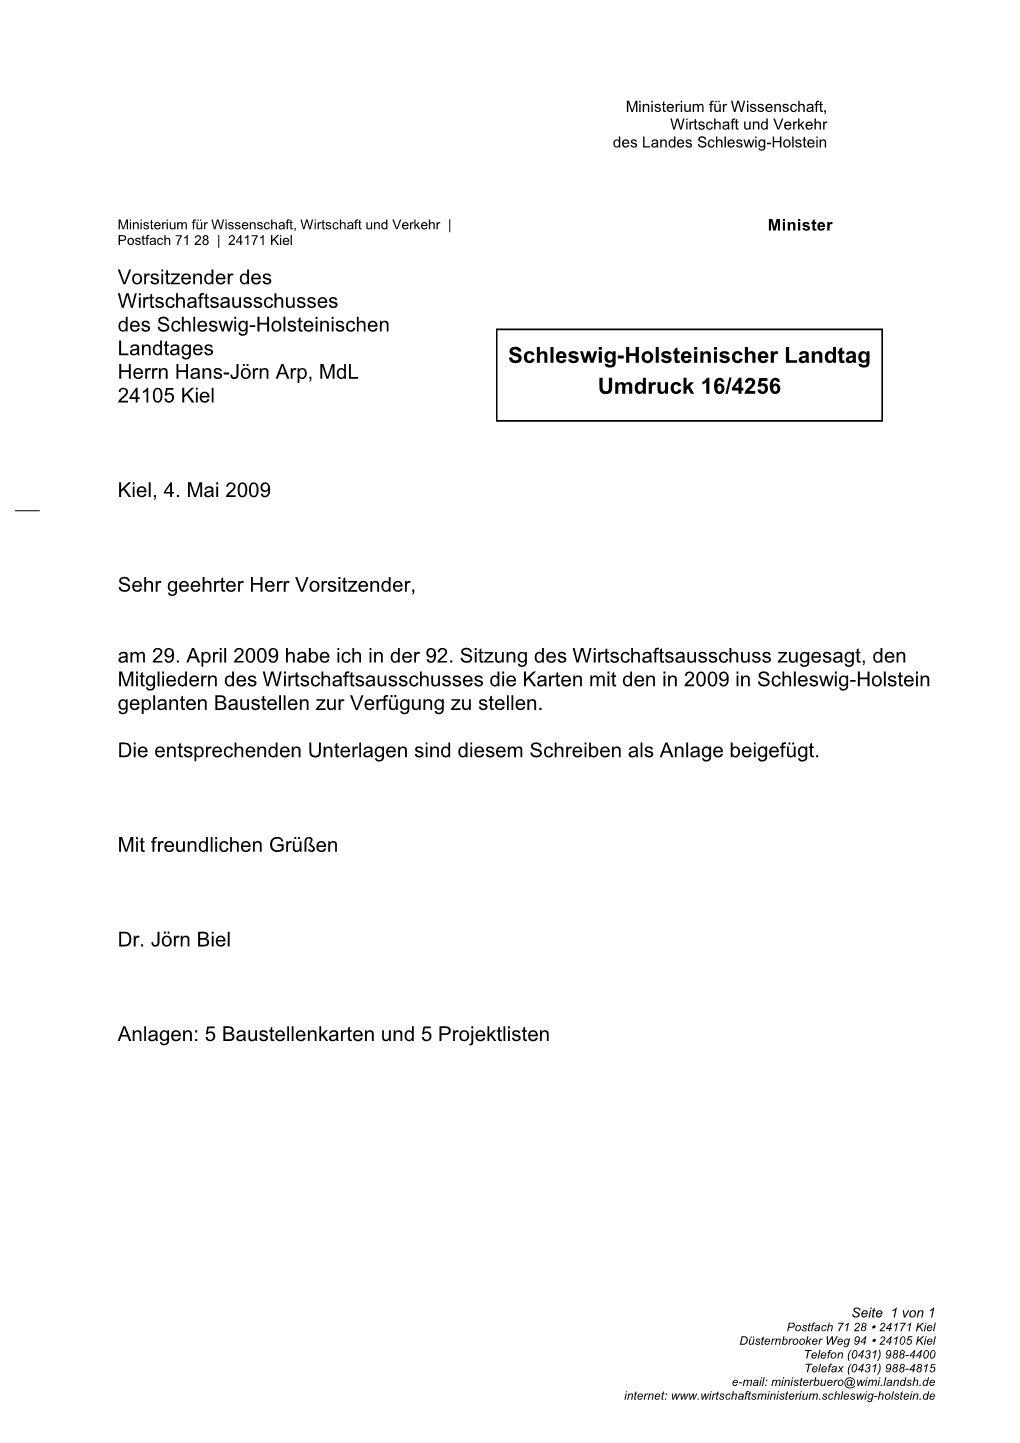 Schleswig-Holsteinischer Landtag Umdruck 16/4256